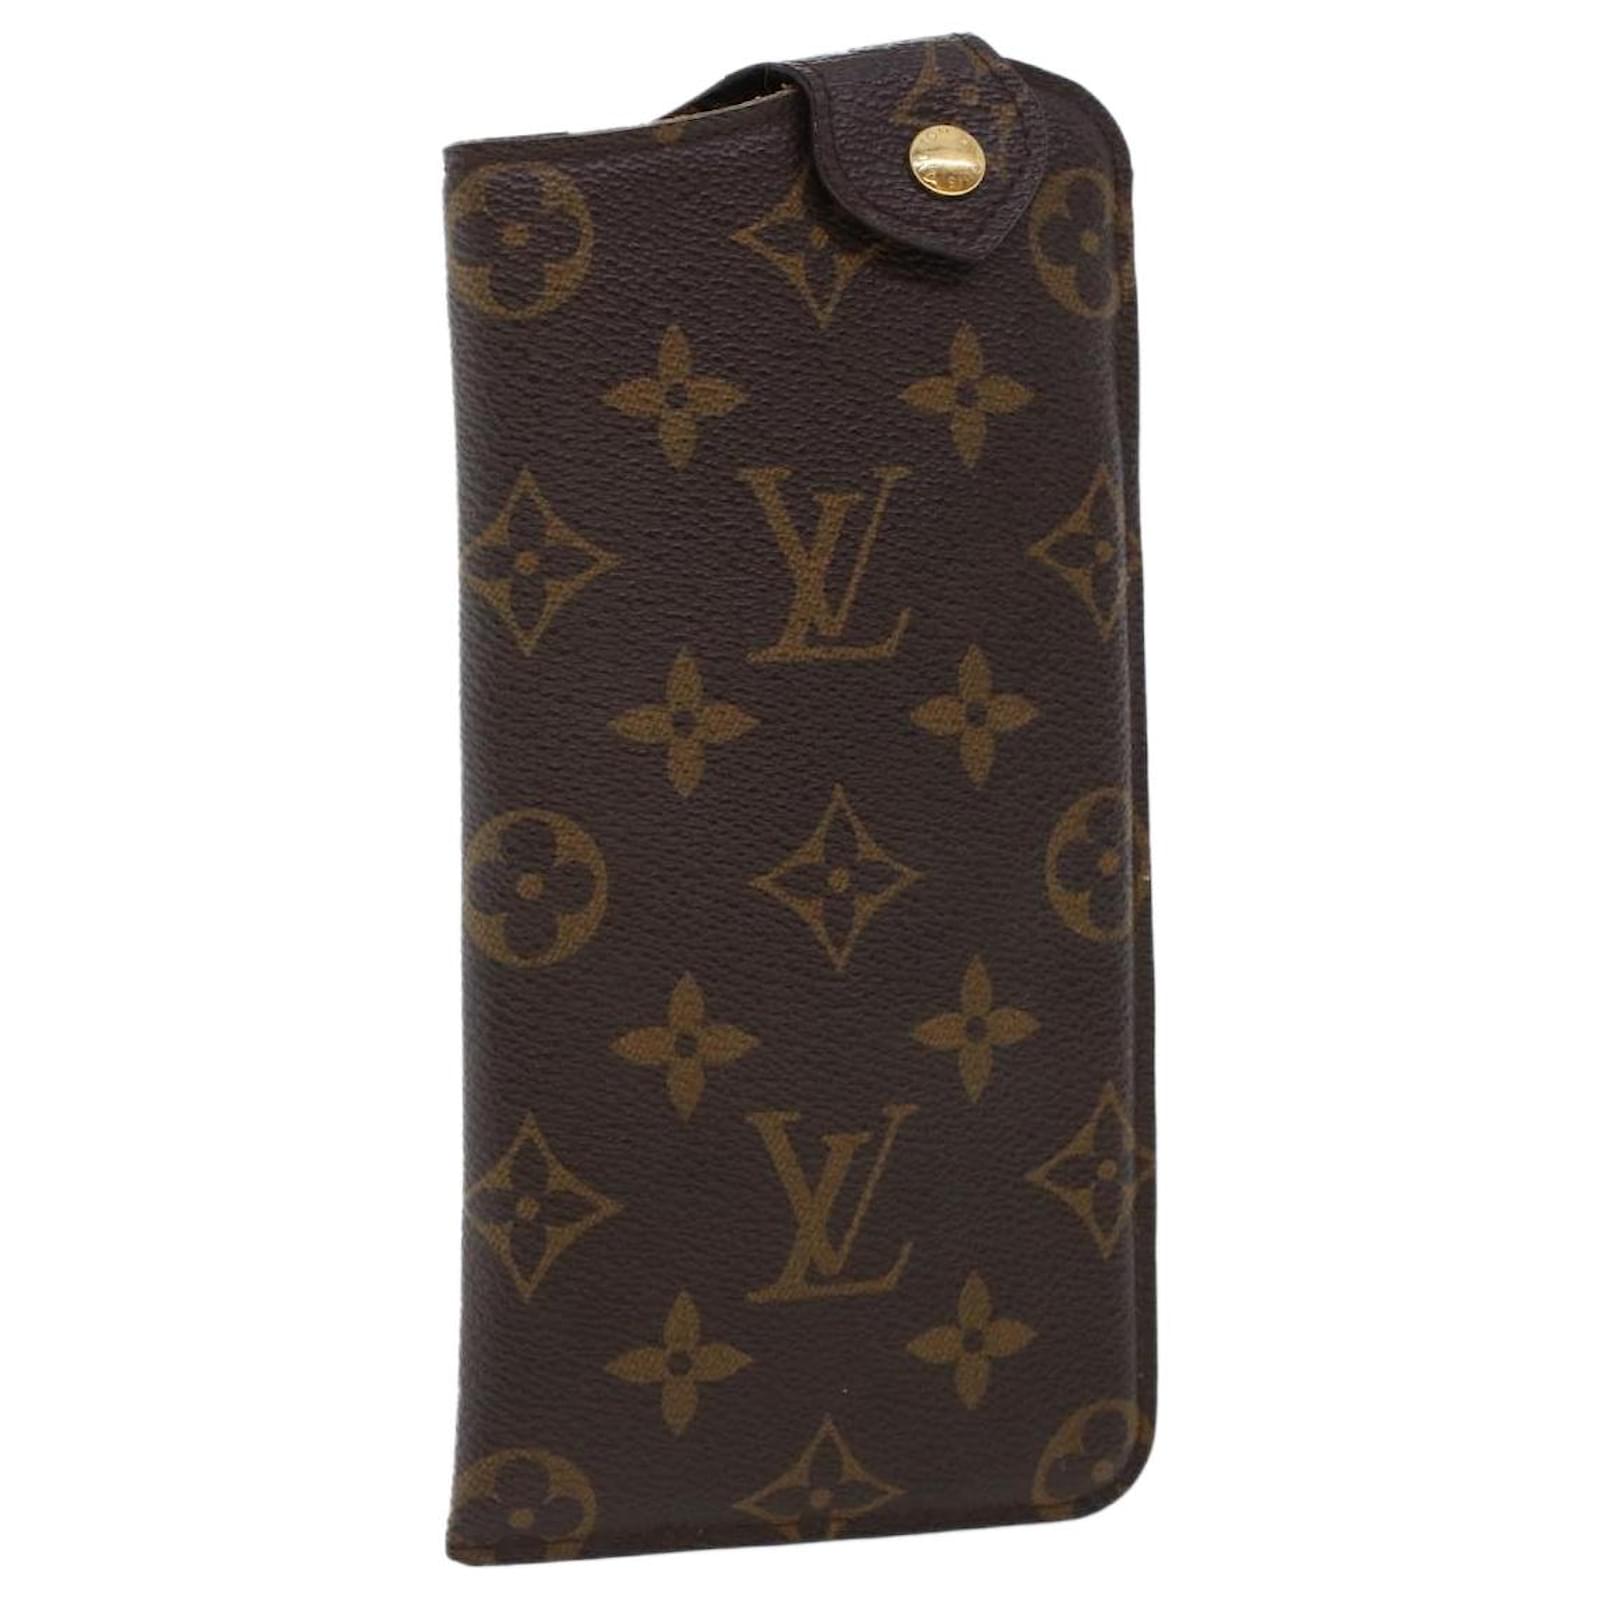 Louis Vuitton Bags | Louis Vuitton Monogram Compact Zip Wallet M61667 LV Auth 47161 | Color: Tan | Size: Os | Openforvintage's Closet